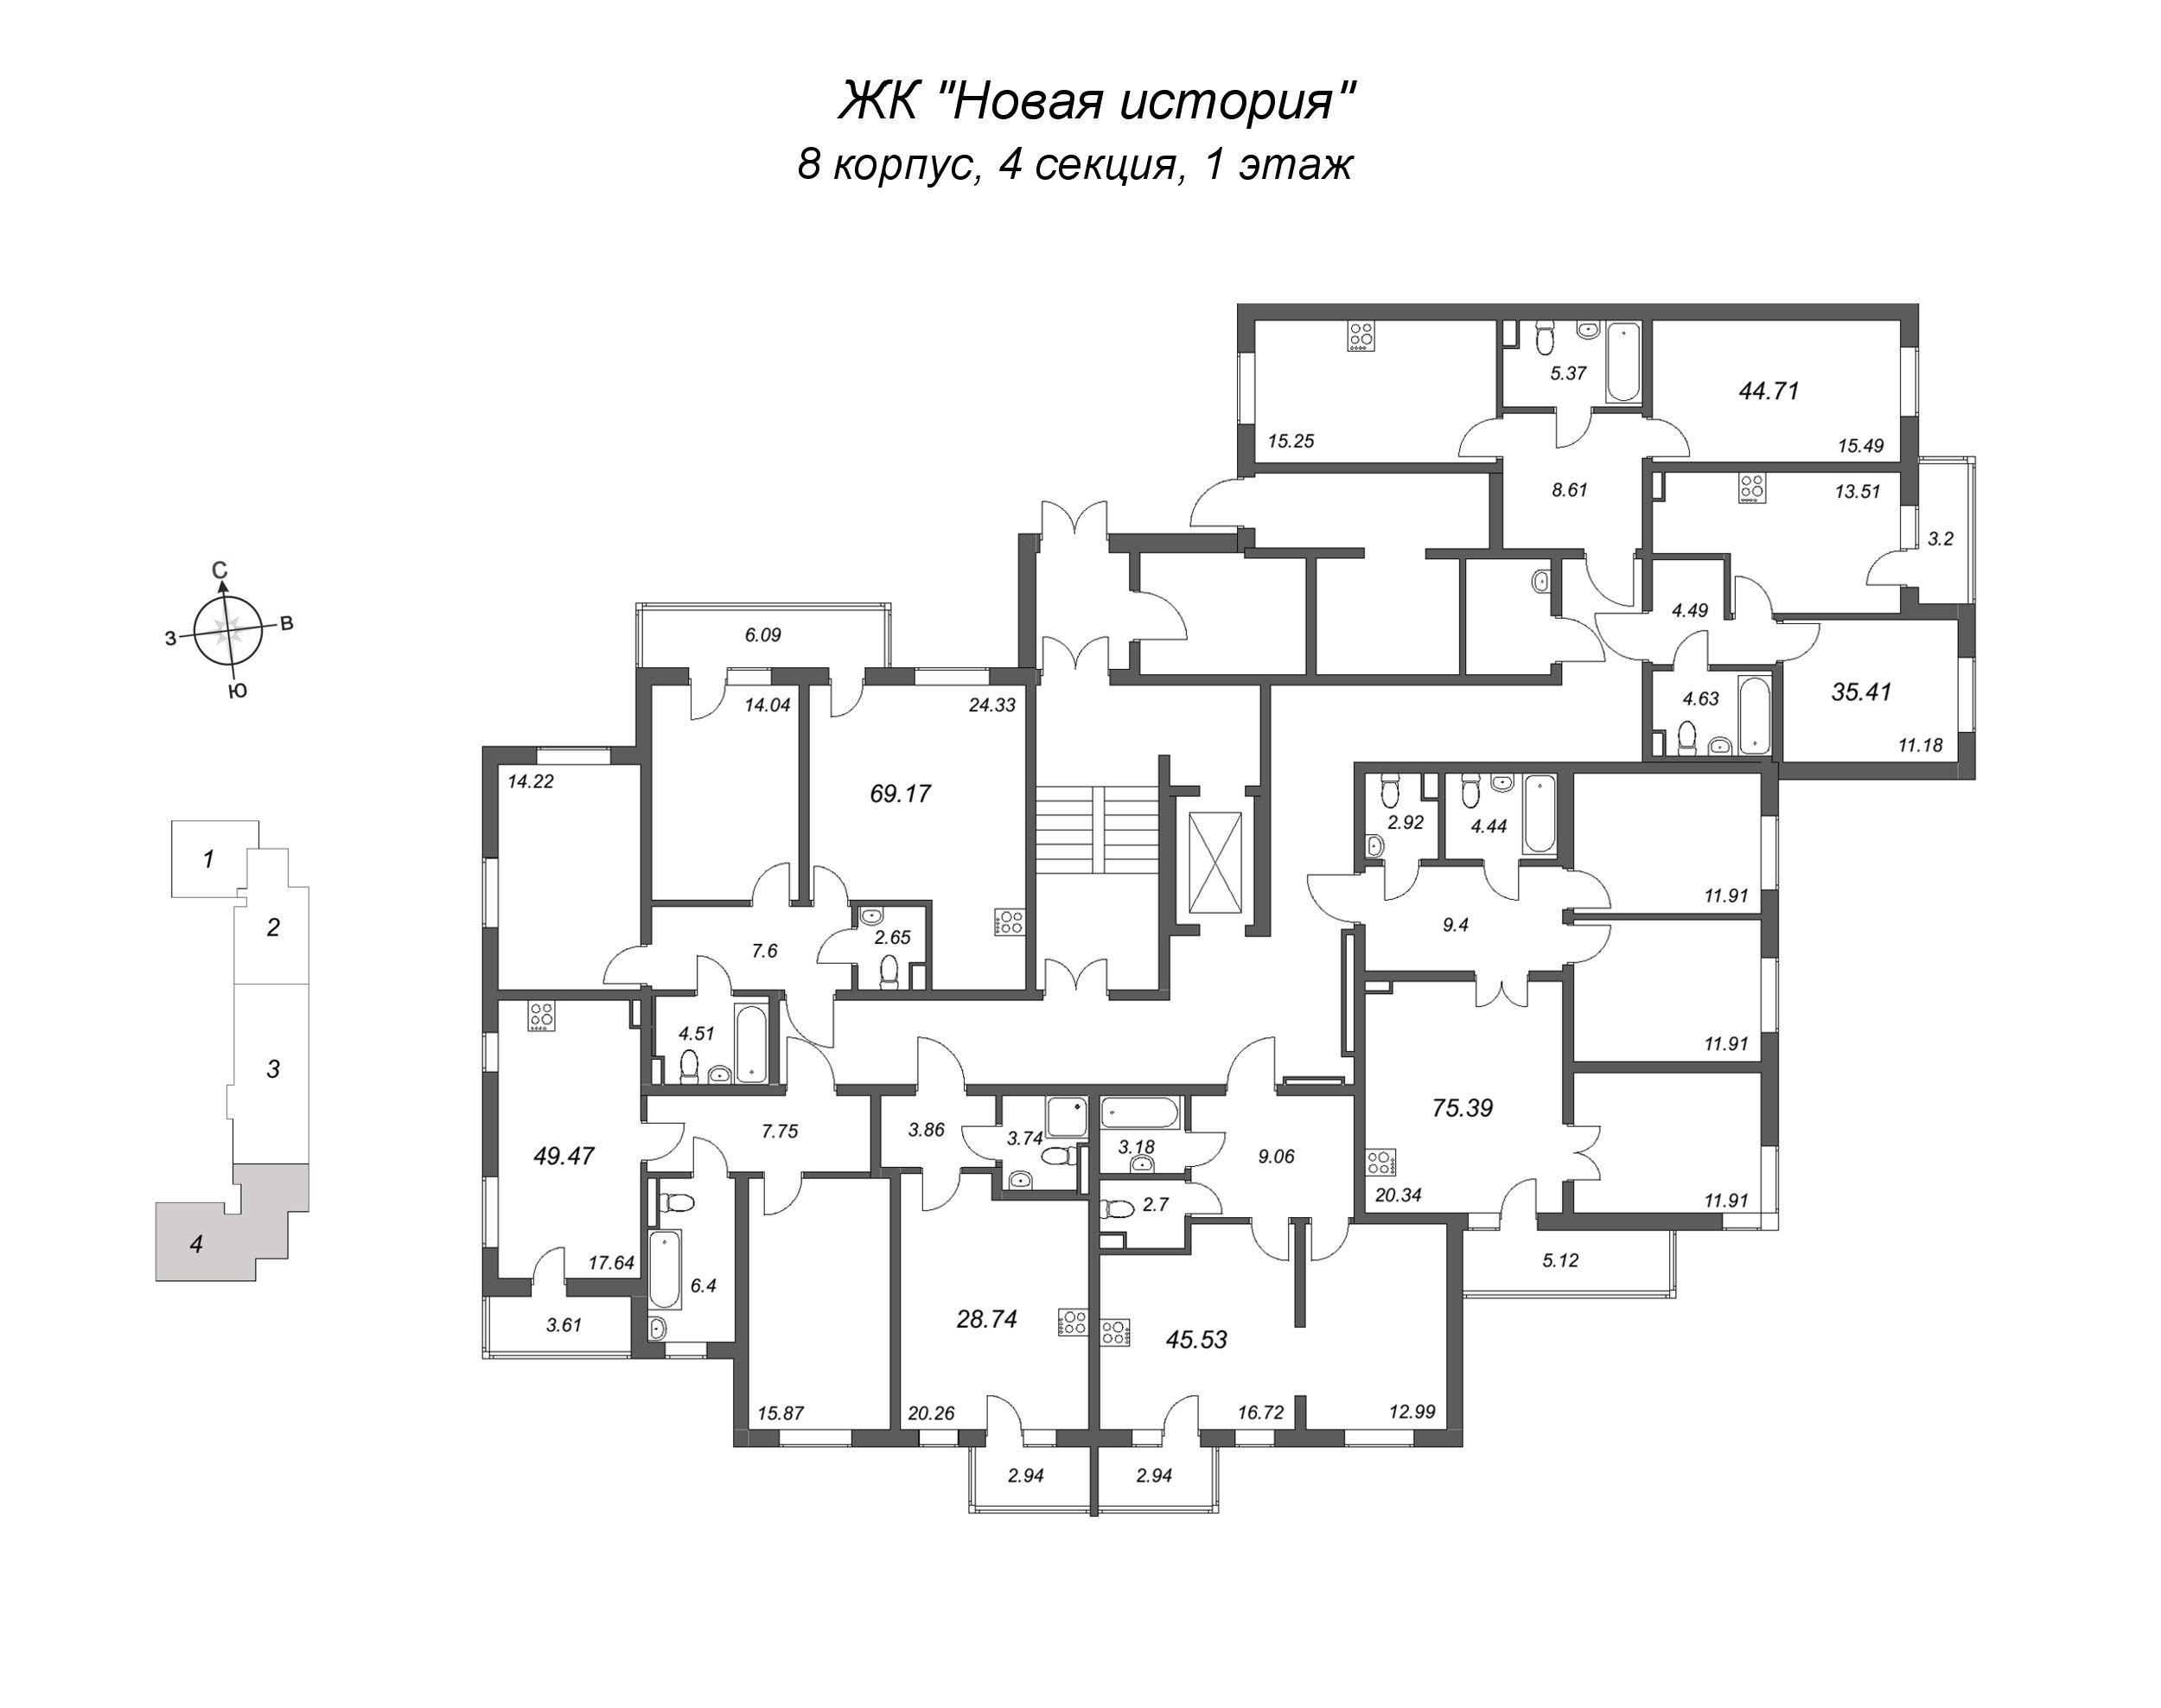 4-комнатная (Евро) квартира, 75.39 м² в ЖК "Новая история" - планировка этажа